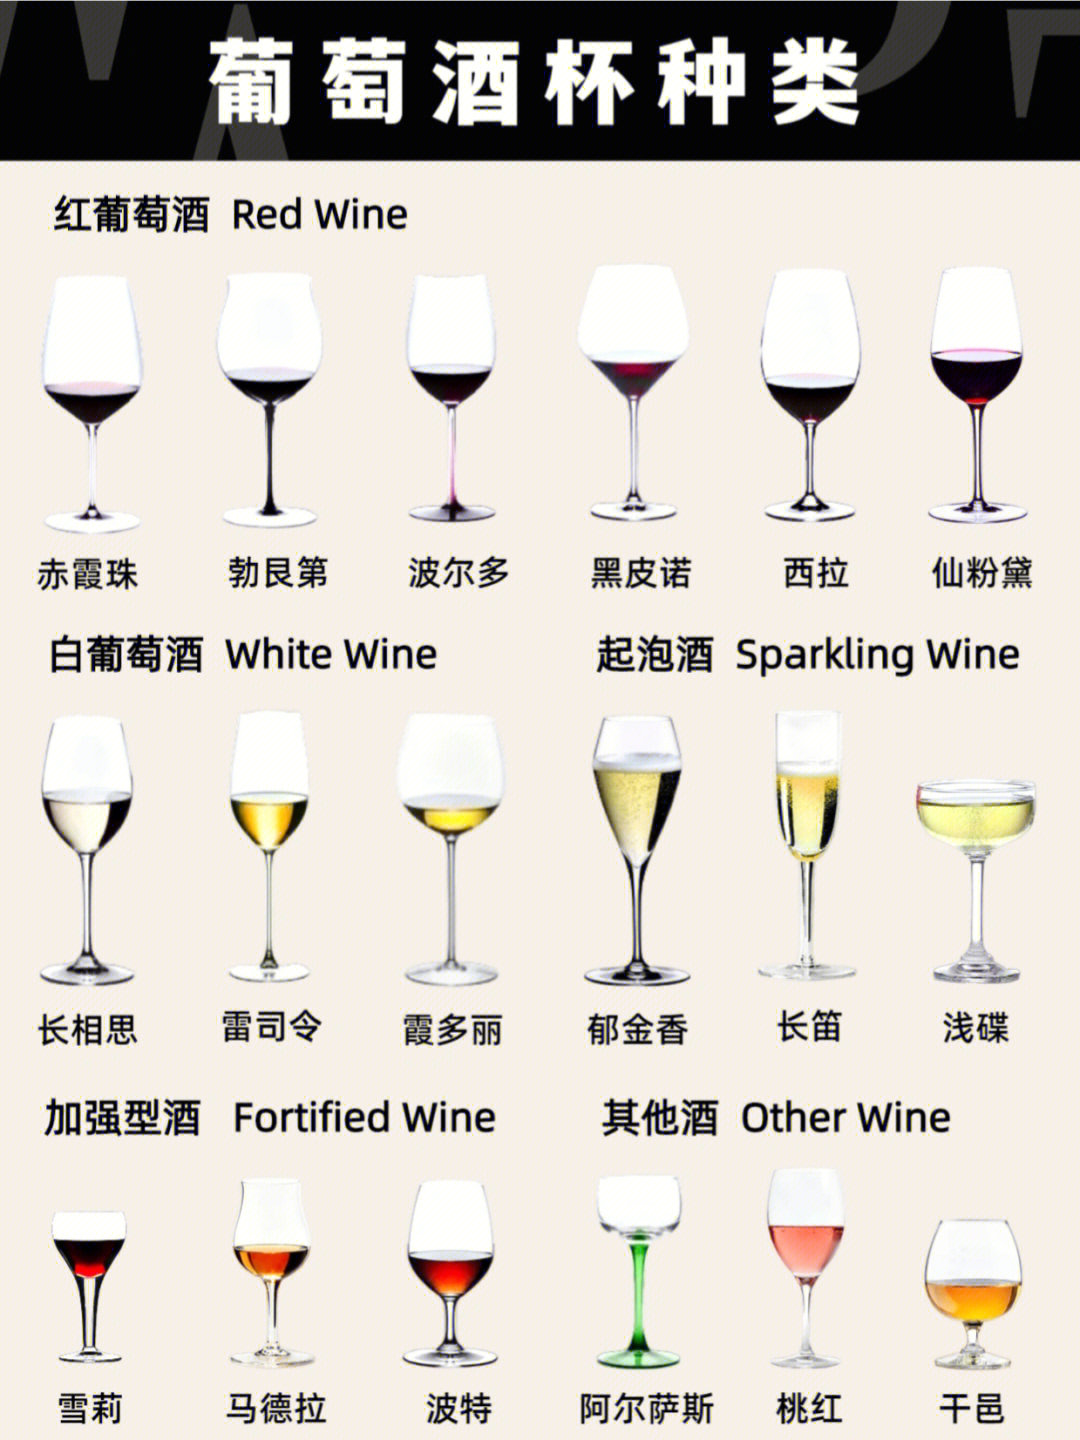 笔记灵感96葡萄酒仪式感葡萄酒品鉴除了红酒的品质之外,葡萄酒杯